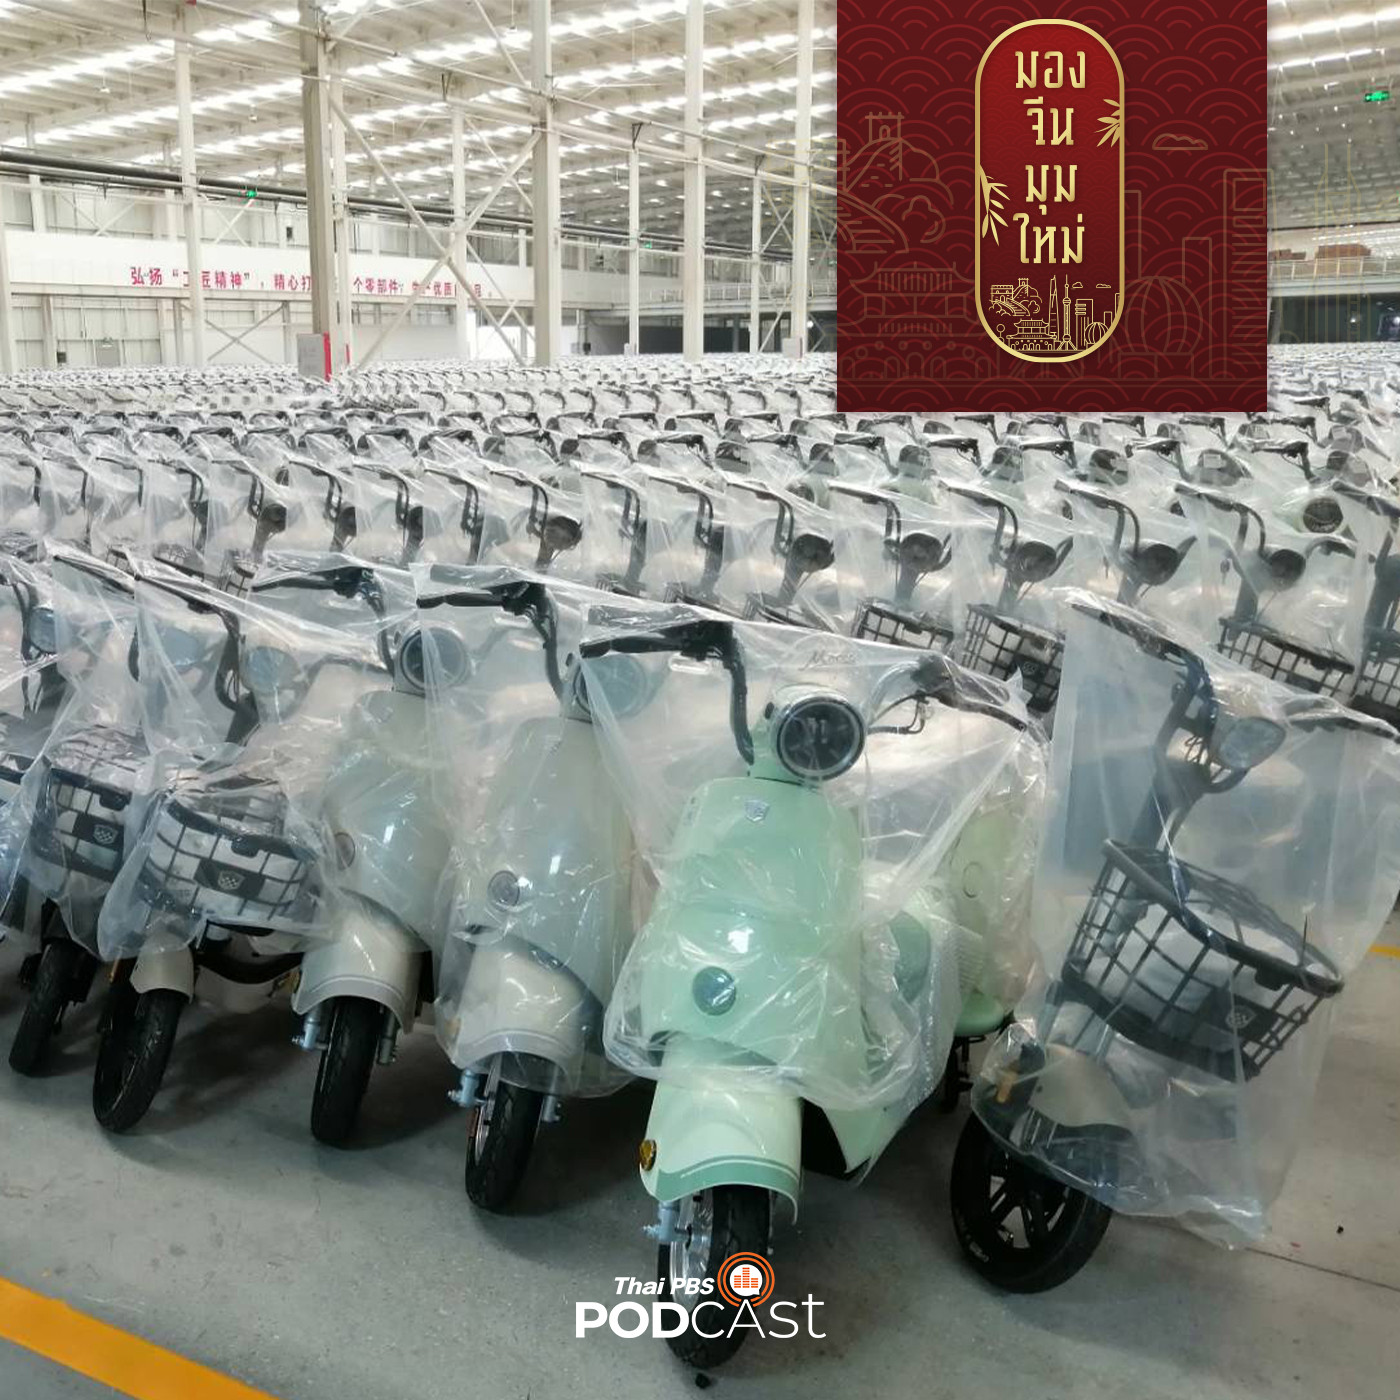 มองจีนมุมใหม่ EP. 135: กว่างซี:  ฐานผลิตยานยนต์ไฟฟ้าจีน - อาเซียน